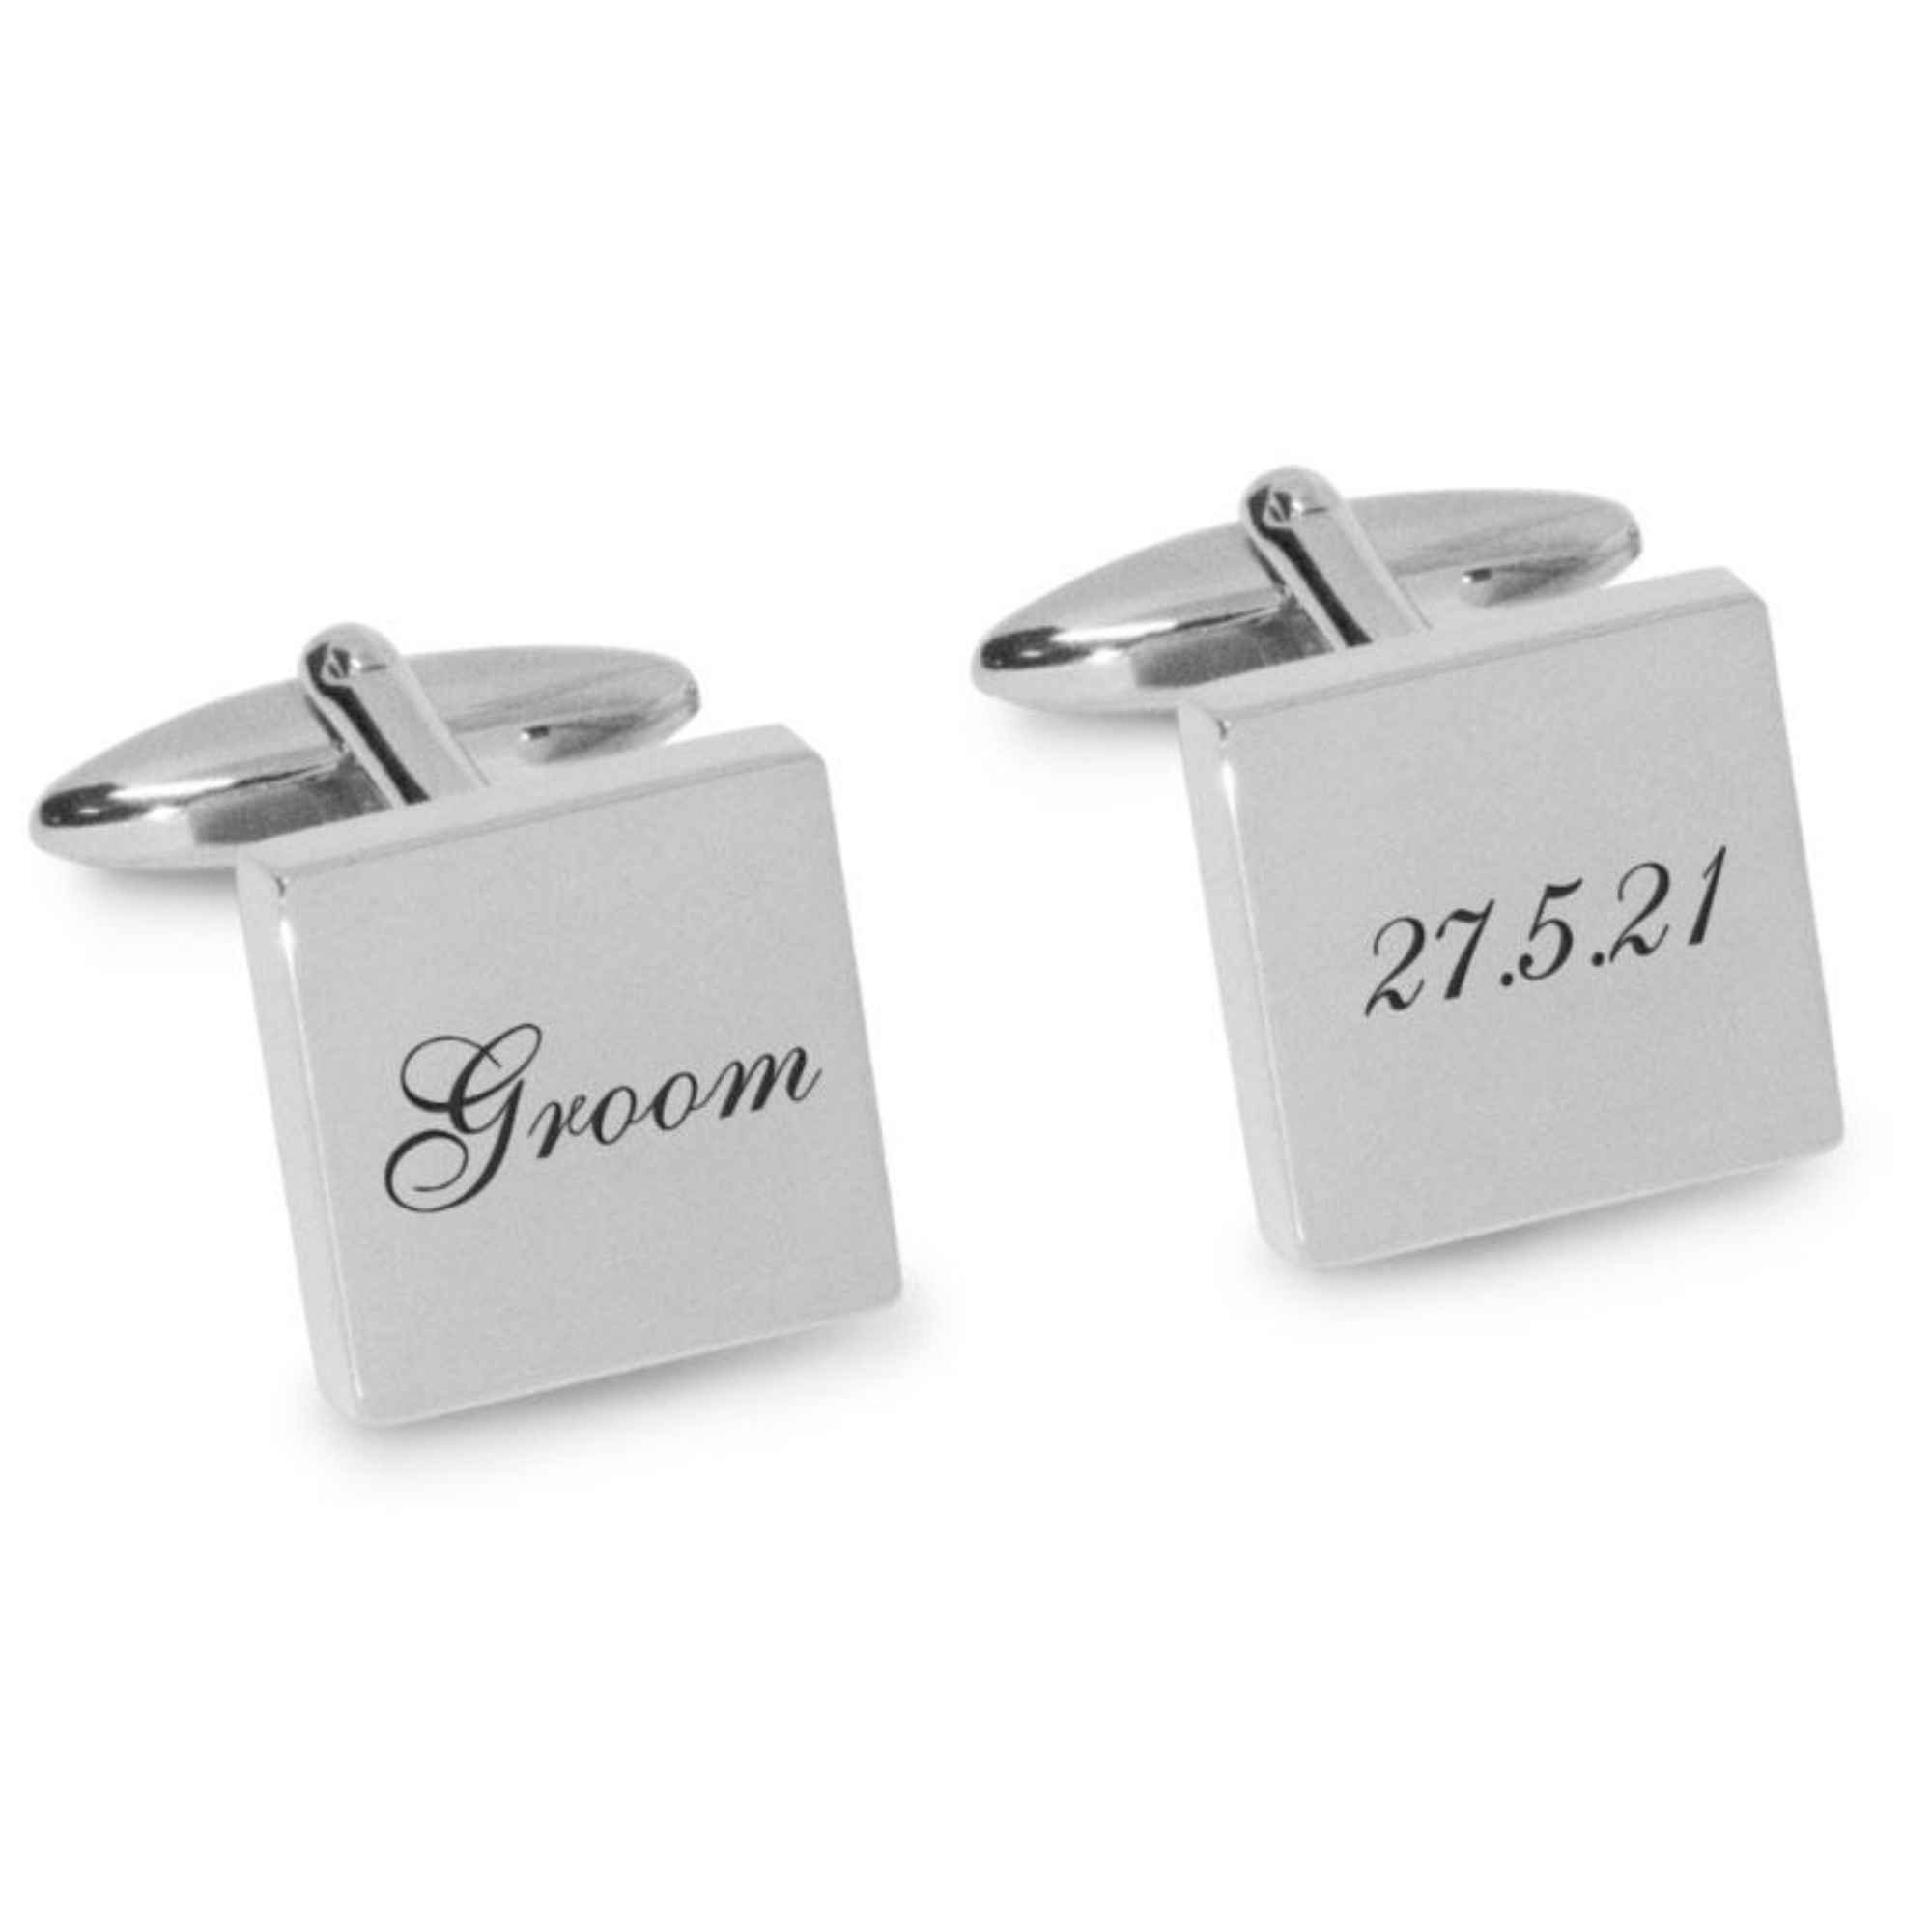 Groom Wedding Date Engraved Cufflinks in Silver